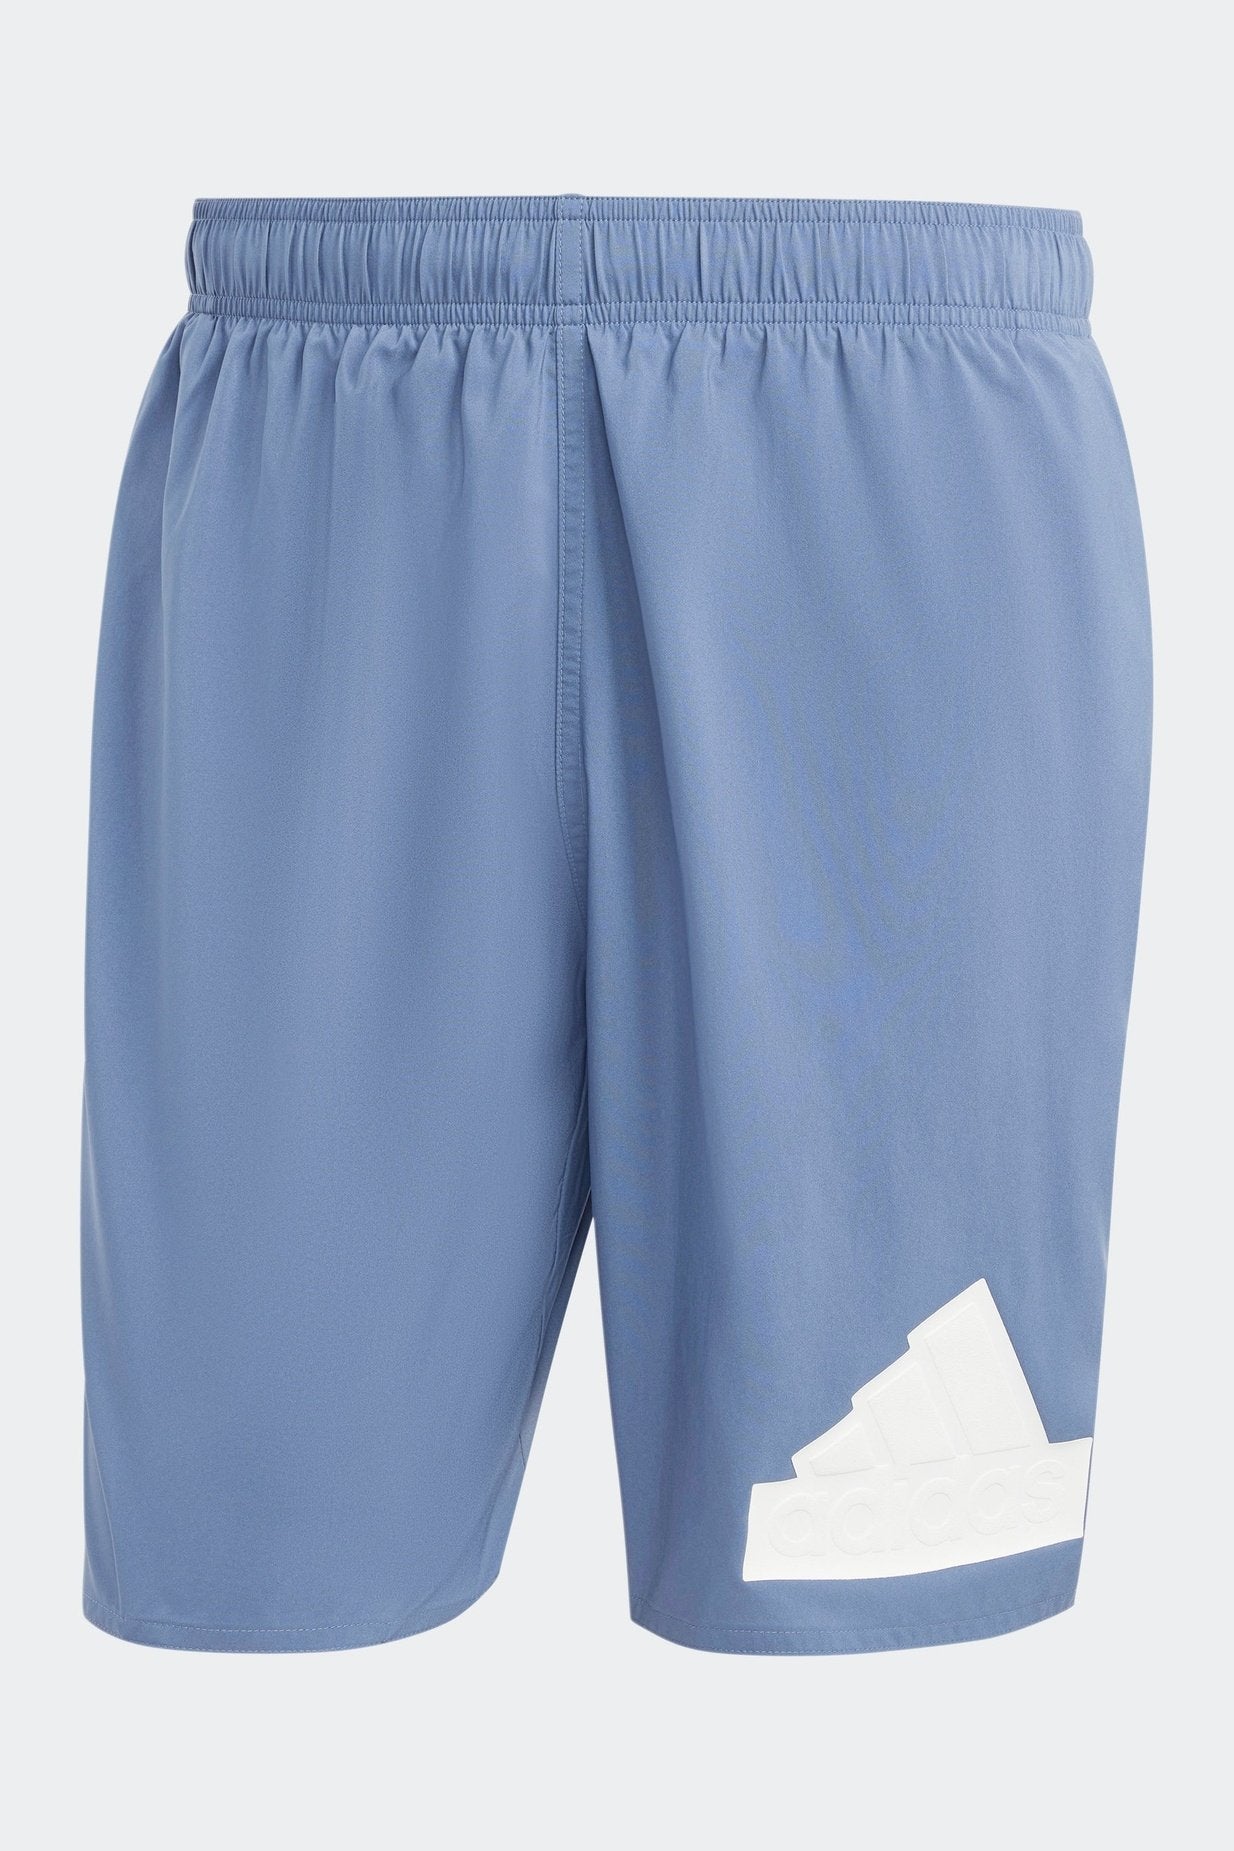 בגד ים לגברים 3-STRIPES CLX  בצבע כחול ולבן